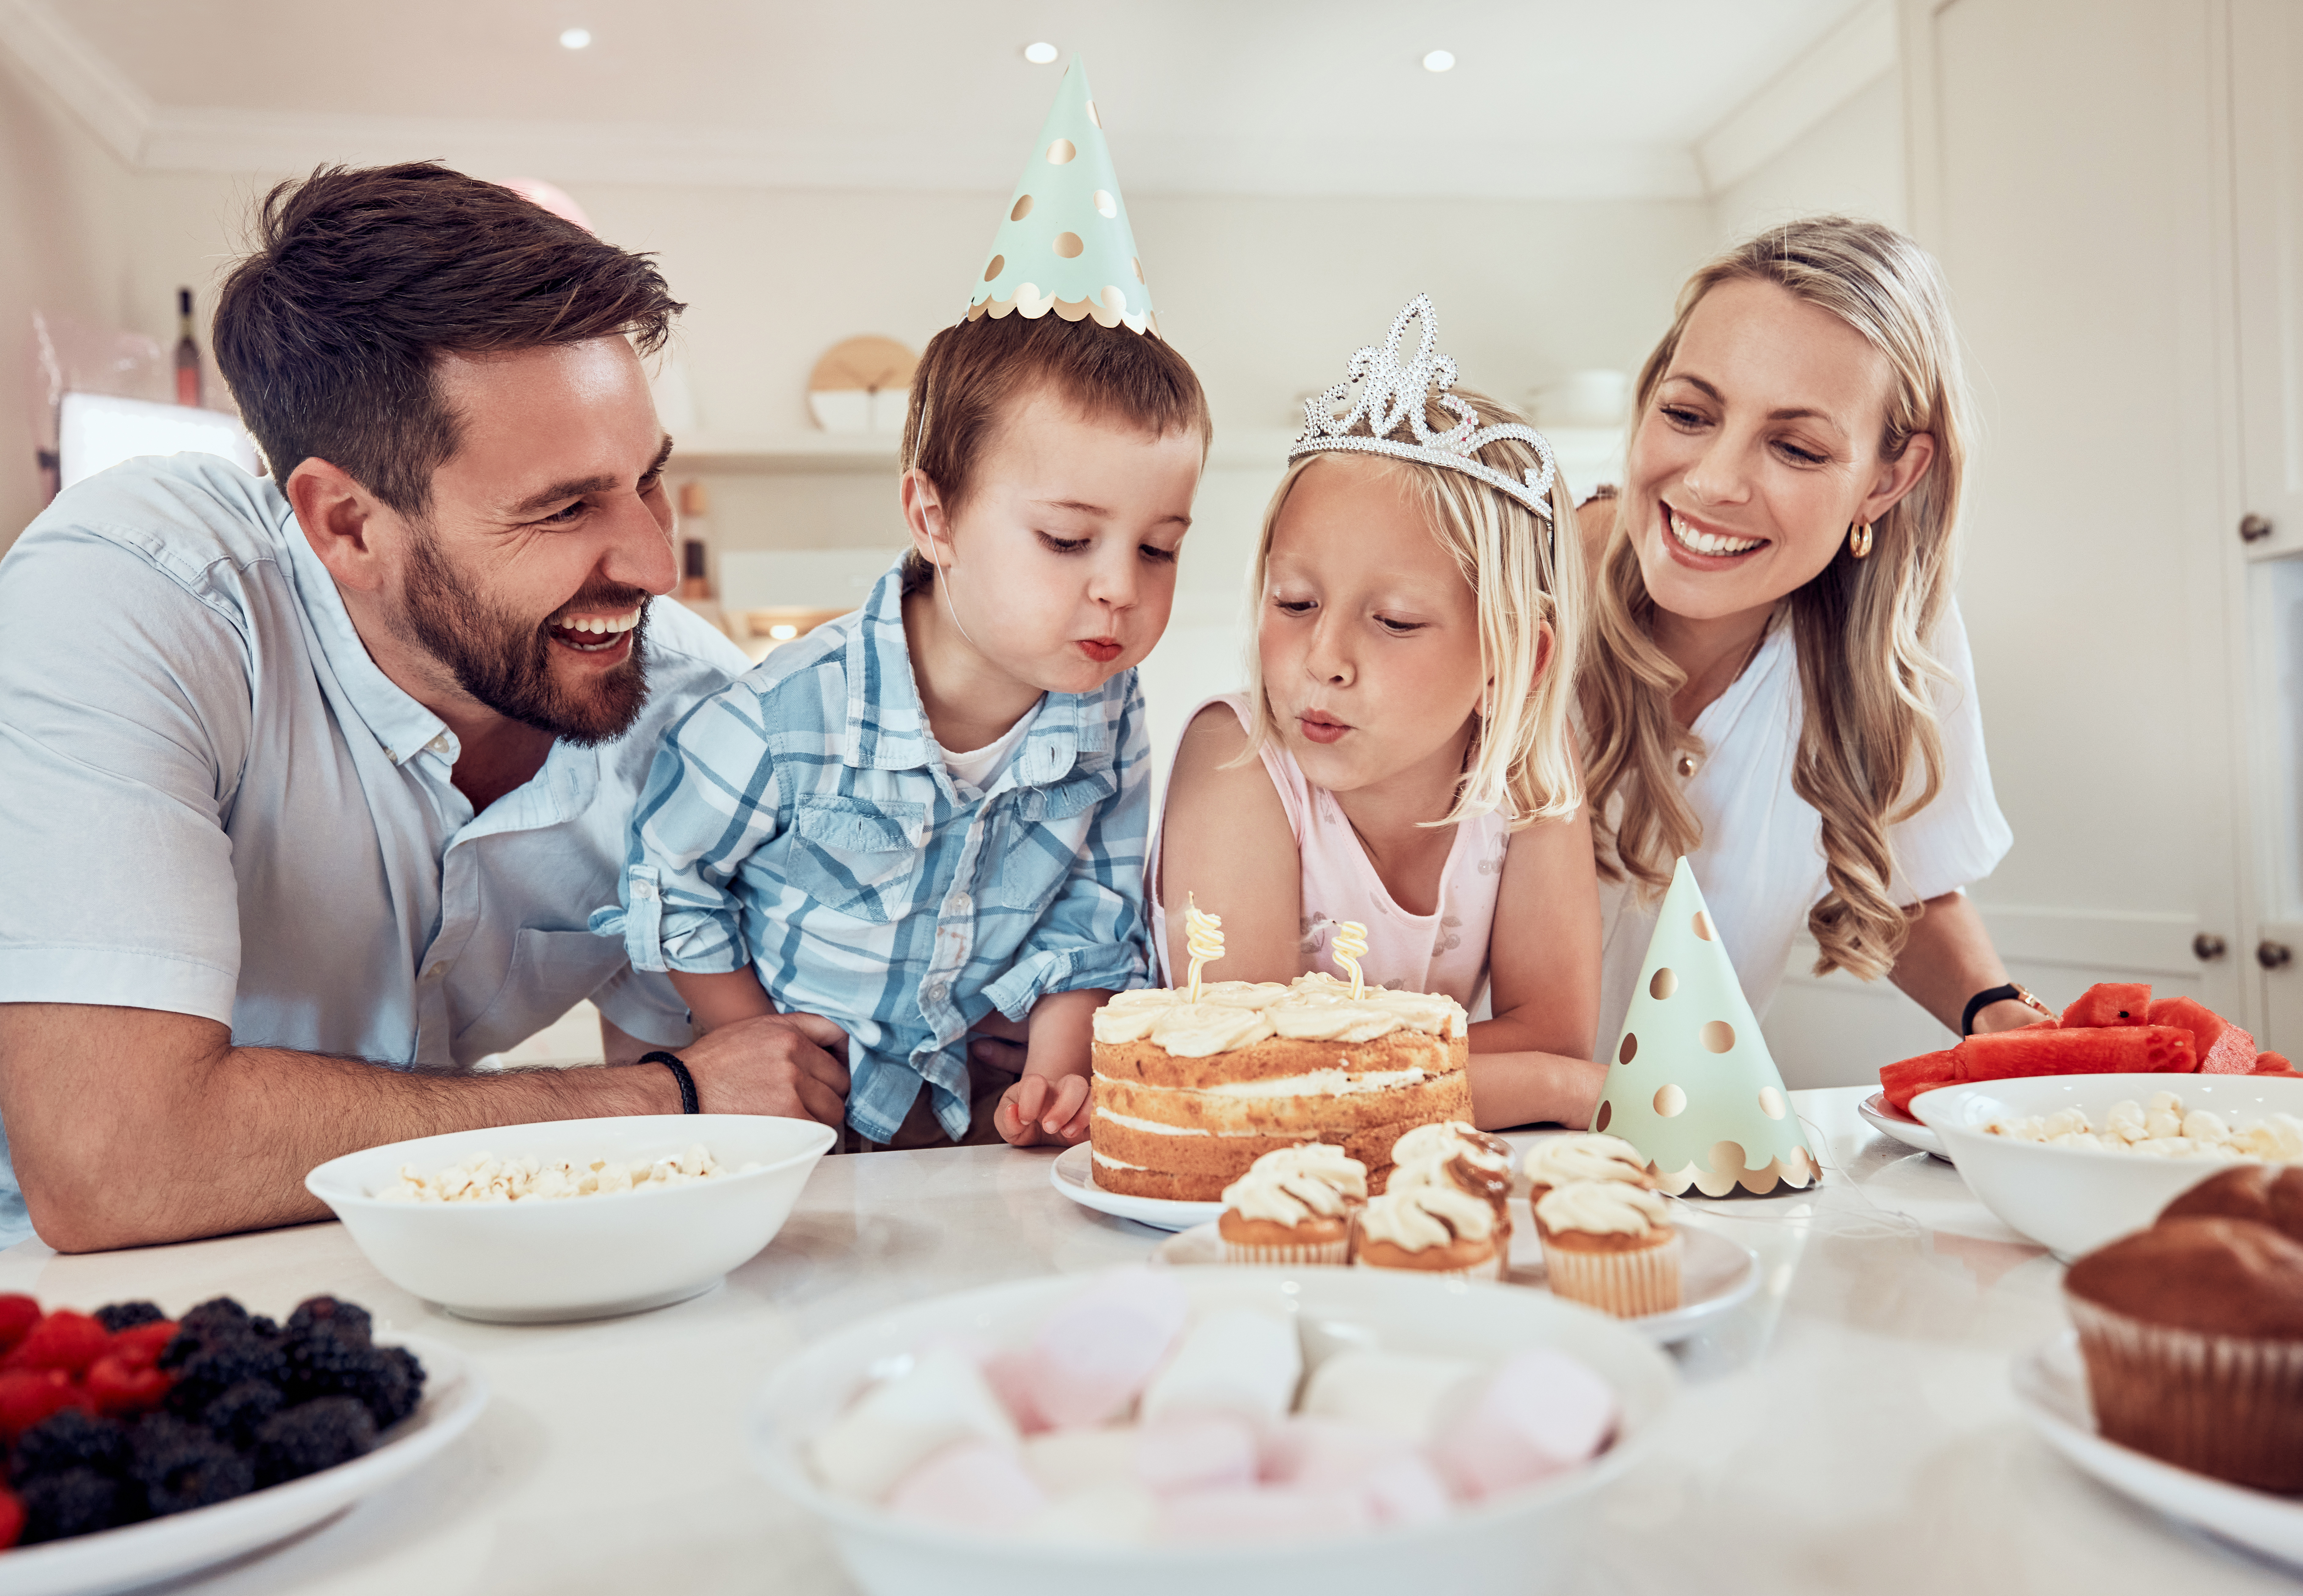 5 Unique Ways to Celebrate Your Kid’s Birthday